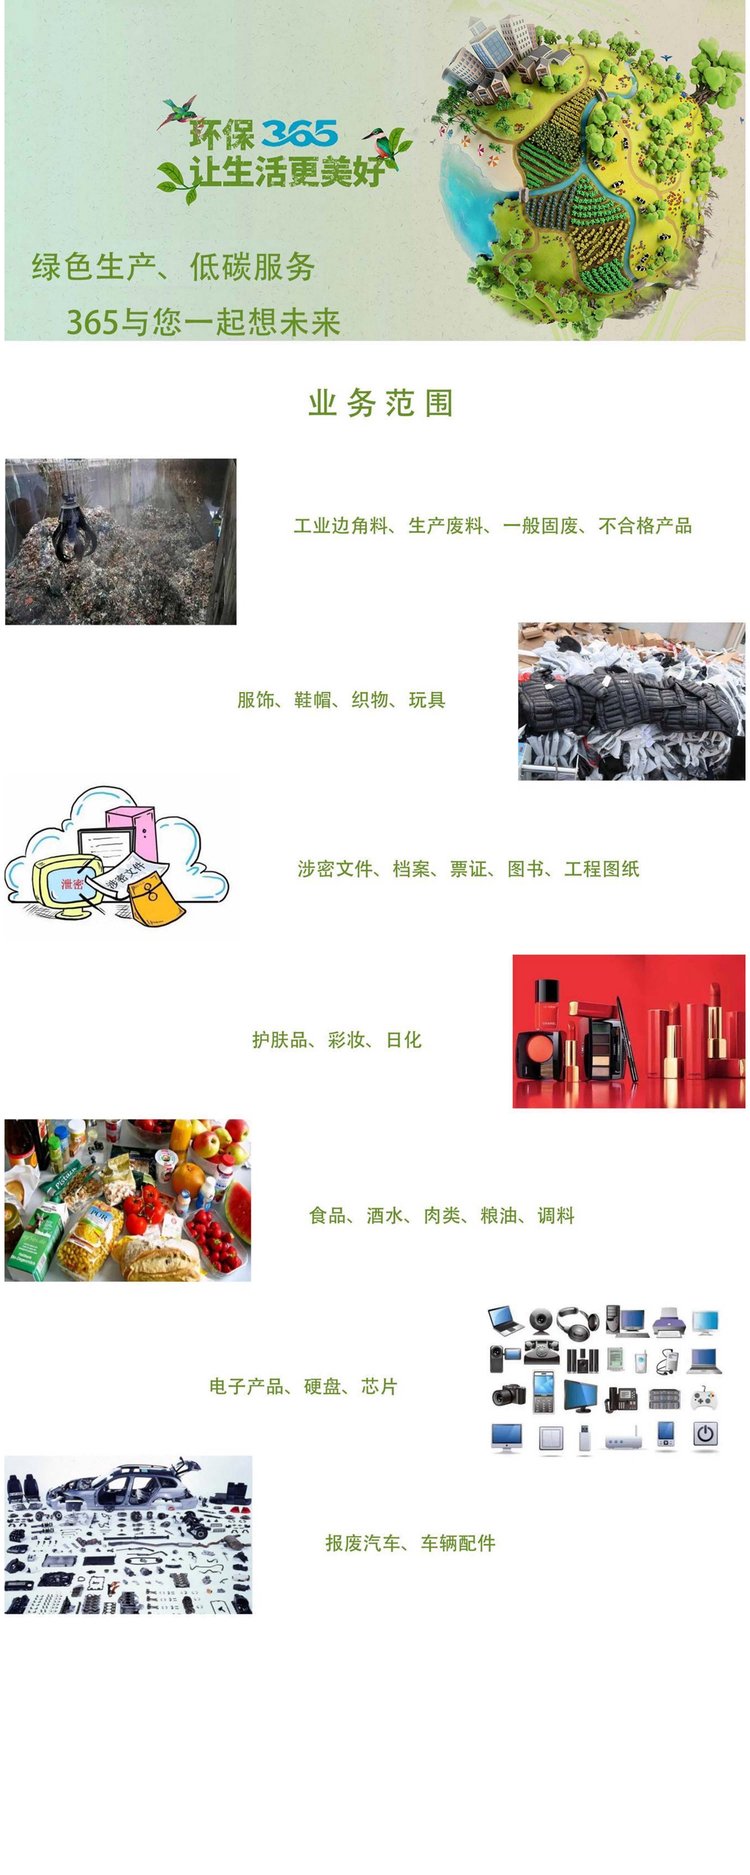 深圳龙华区冻品报废公司保税区货物销毁中心